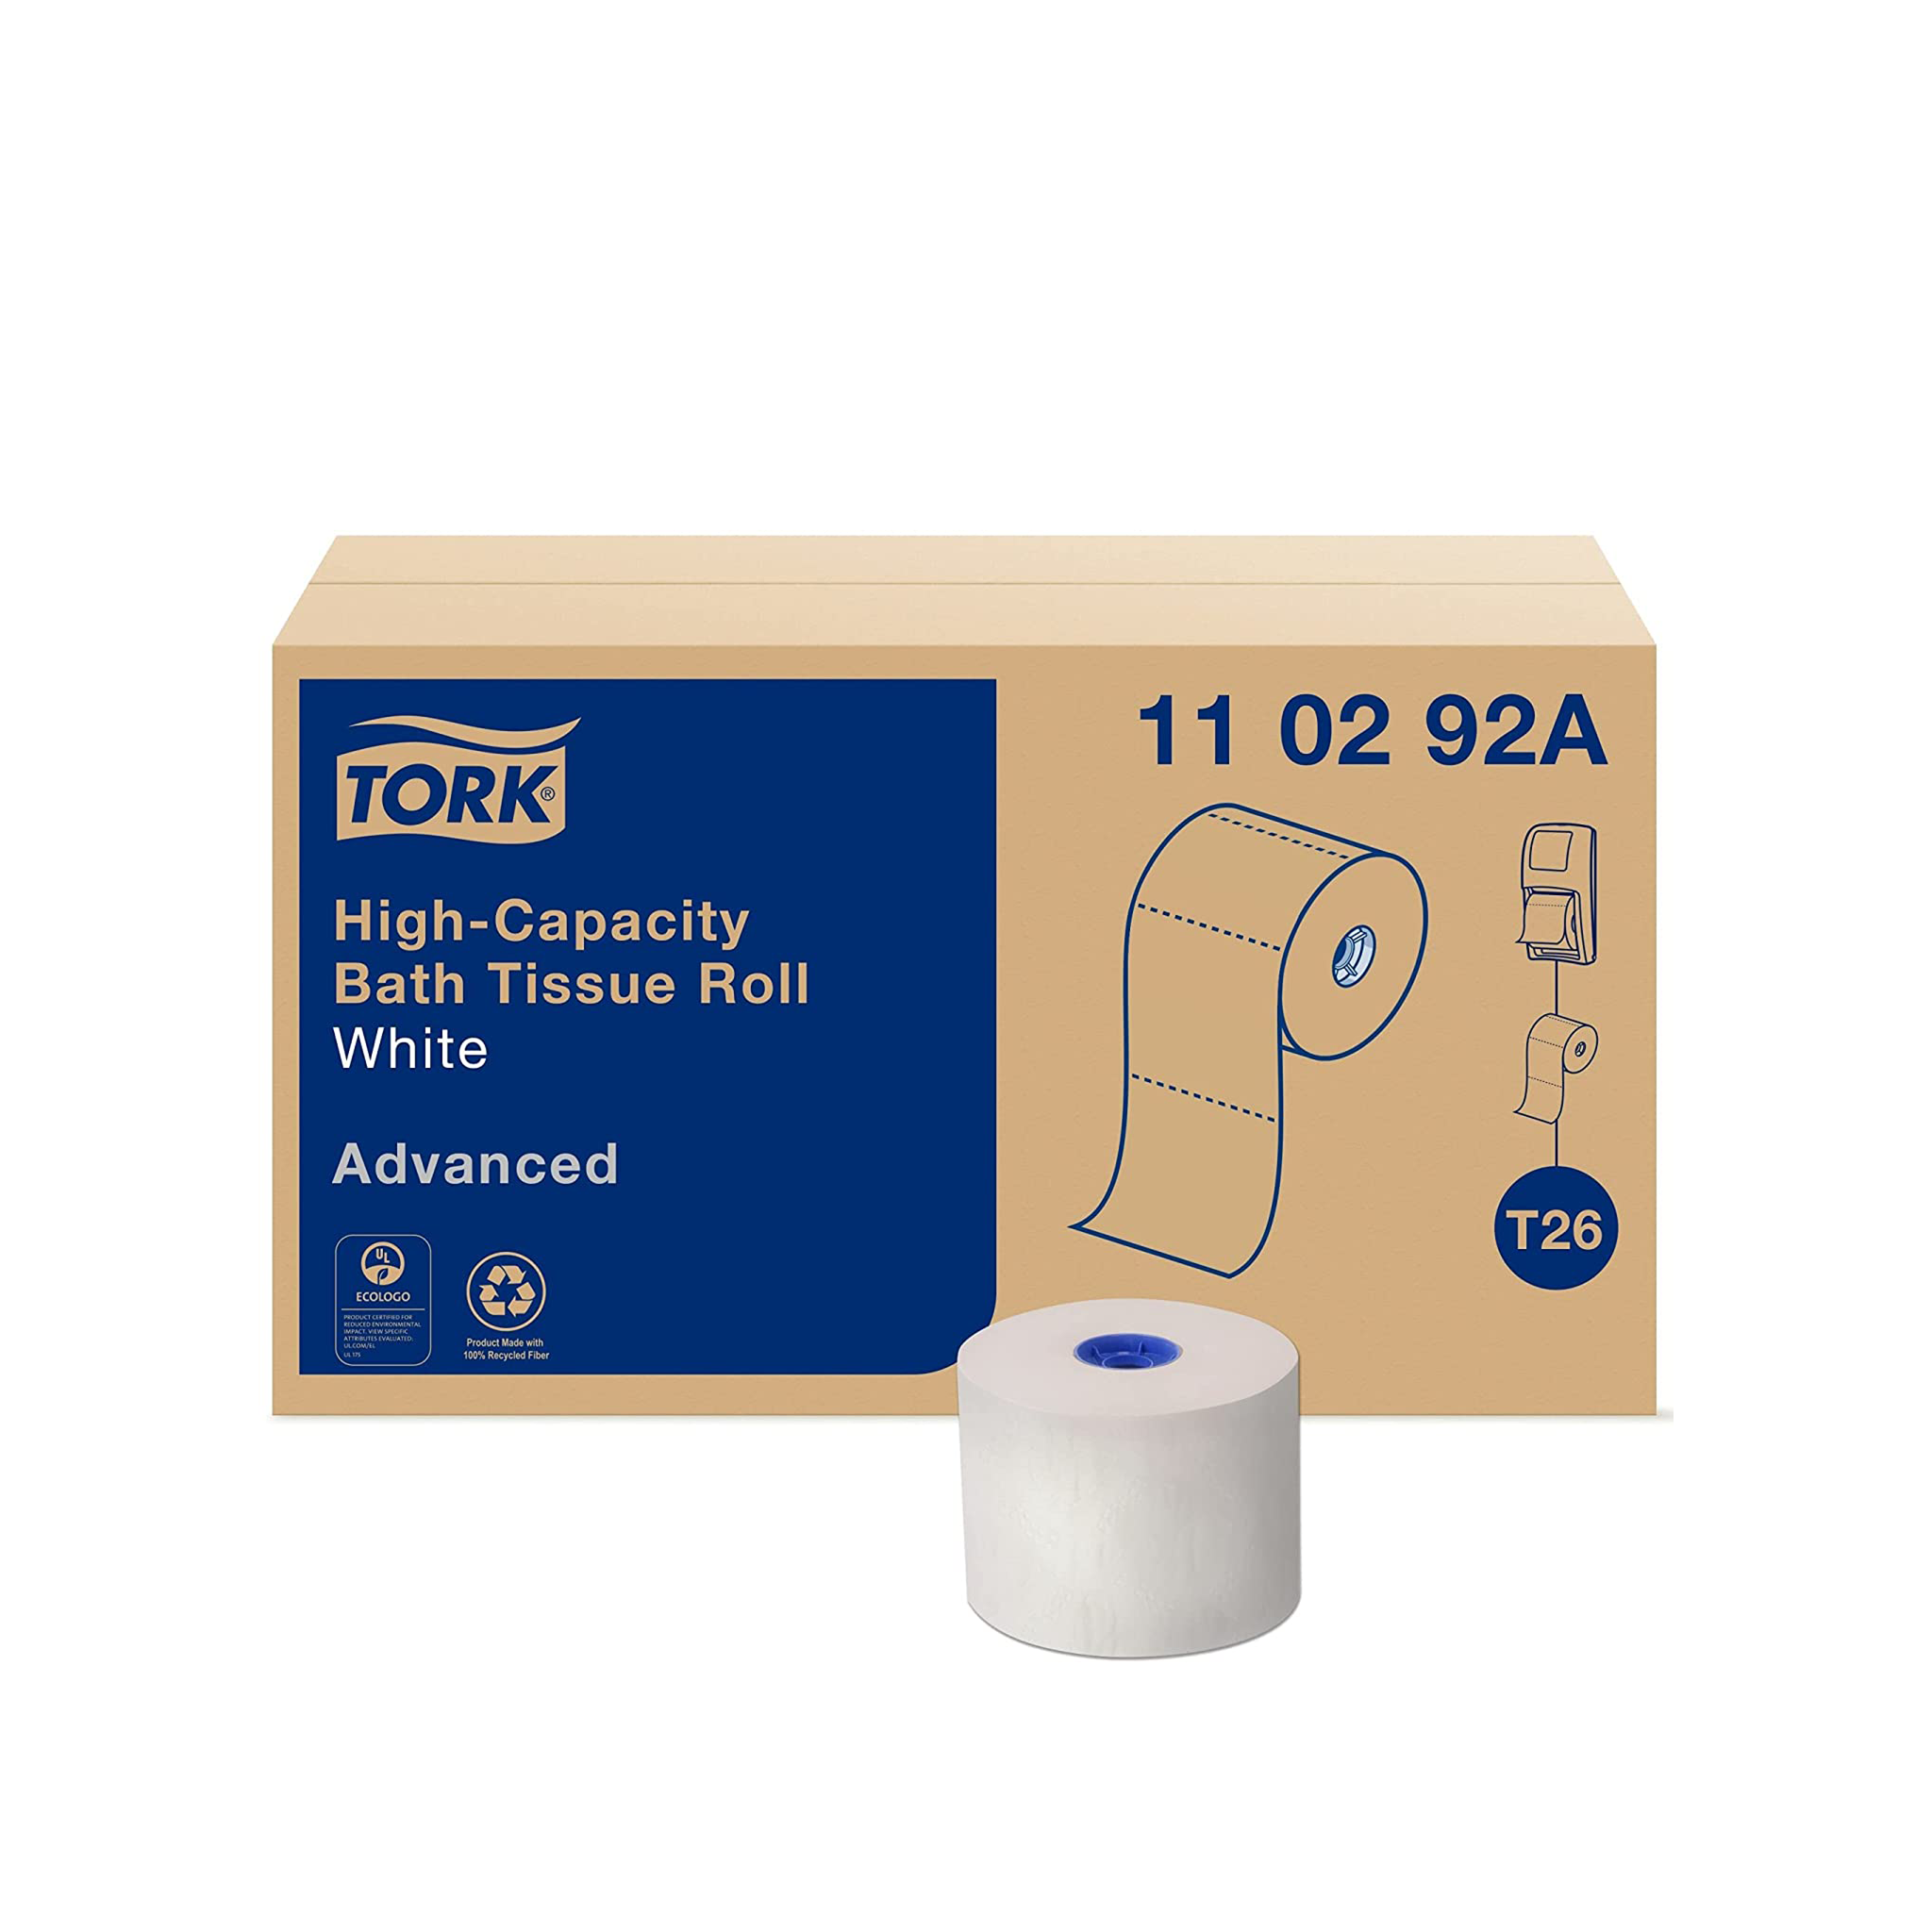 TORK 110292A Advanced High Capacity Bath Tissue Roll, White